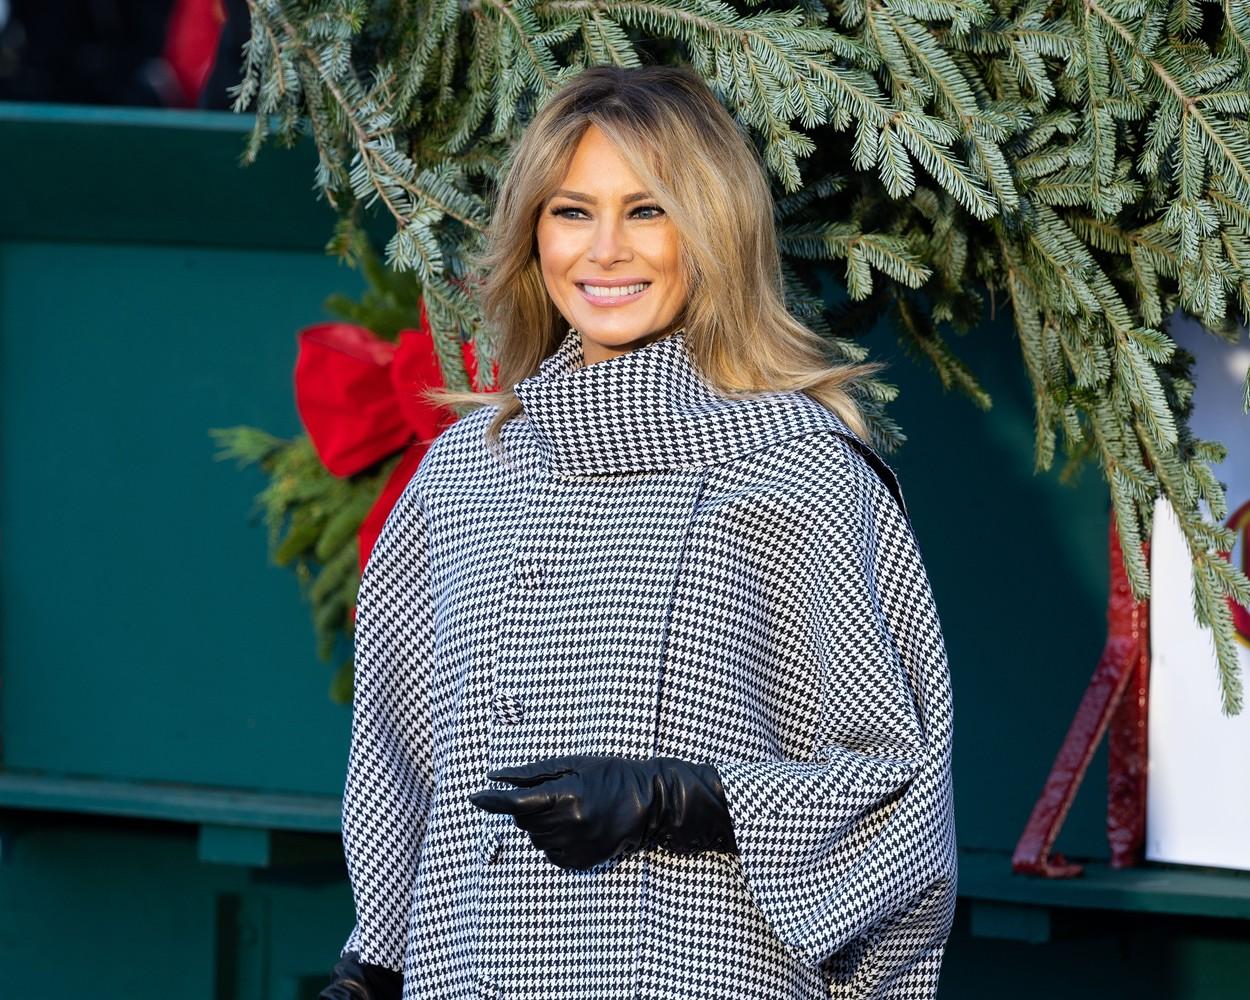 Ținuta aleasă de Melania Trump pentru a primi brazii de la Casa Albă. E ultimul Crăciun pe care îl organizează ca Prima Doamnă